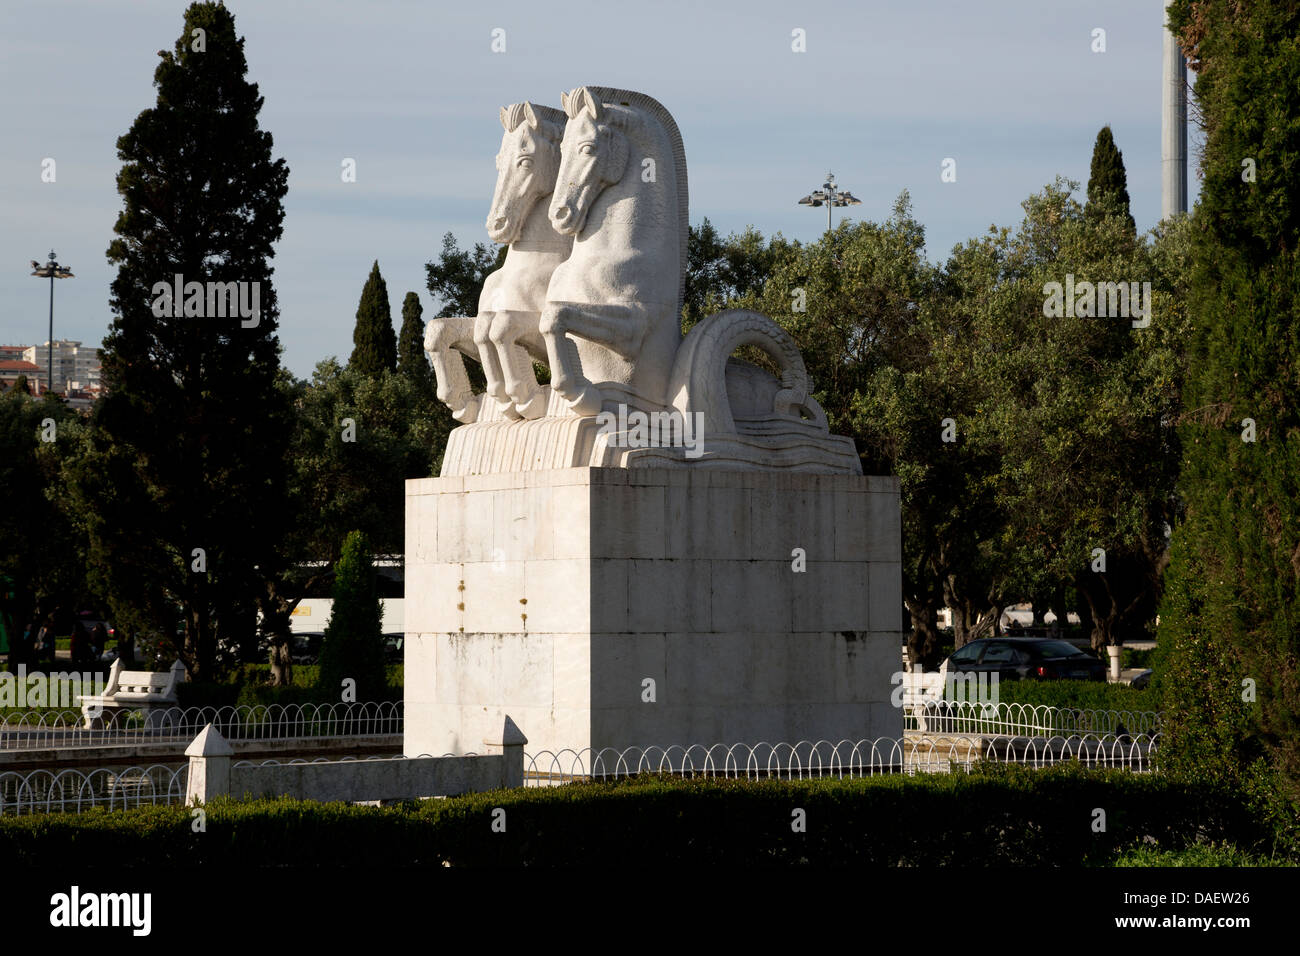 Les chevaux, statue équestre dans les jardins de Mosteiro dos Jeronimos, Praca do Imperio, Lisbonne, Portugal Banque D'Images